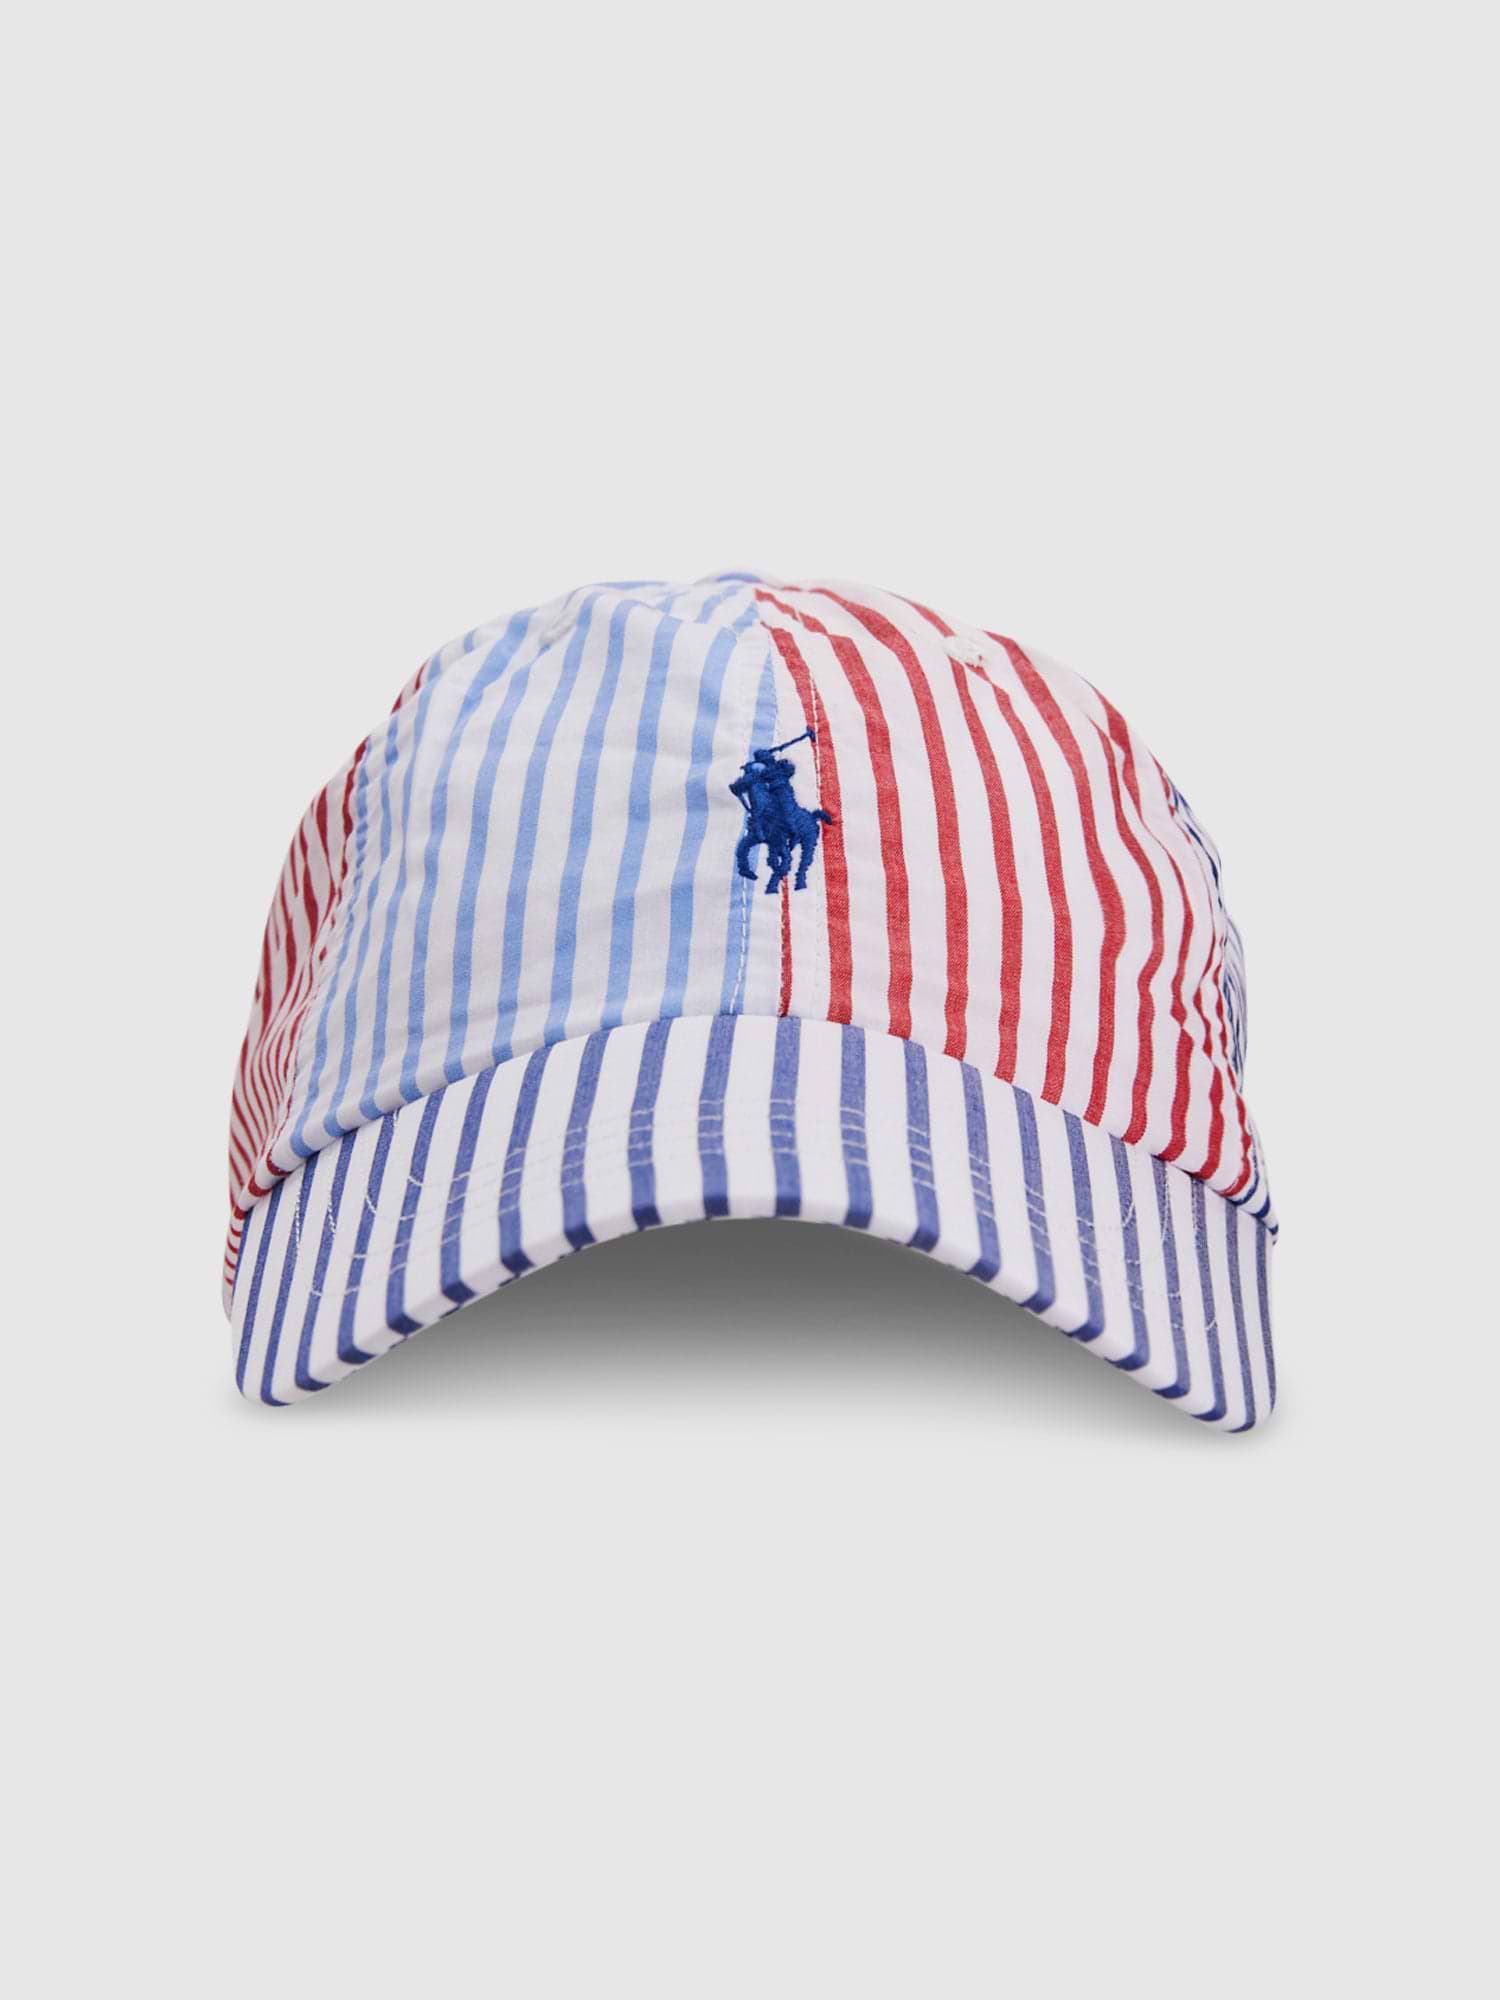 כובע מצחייה עם לוגו רקום / יוניסקס